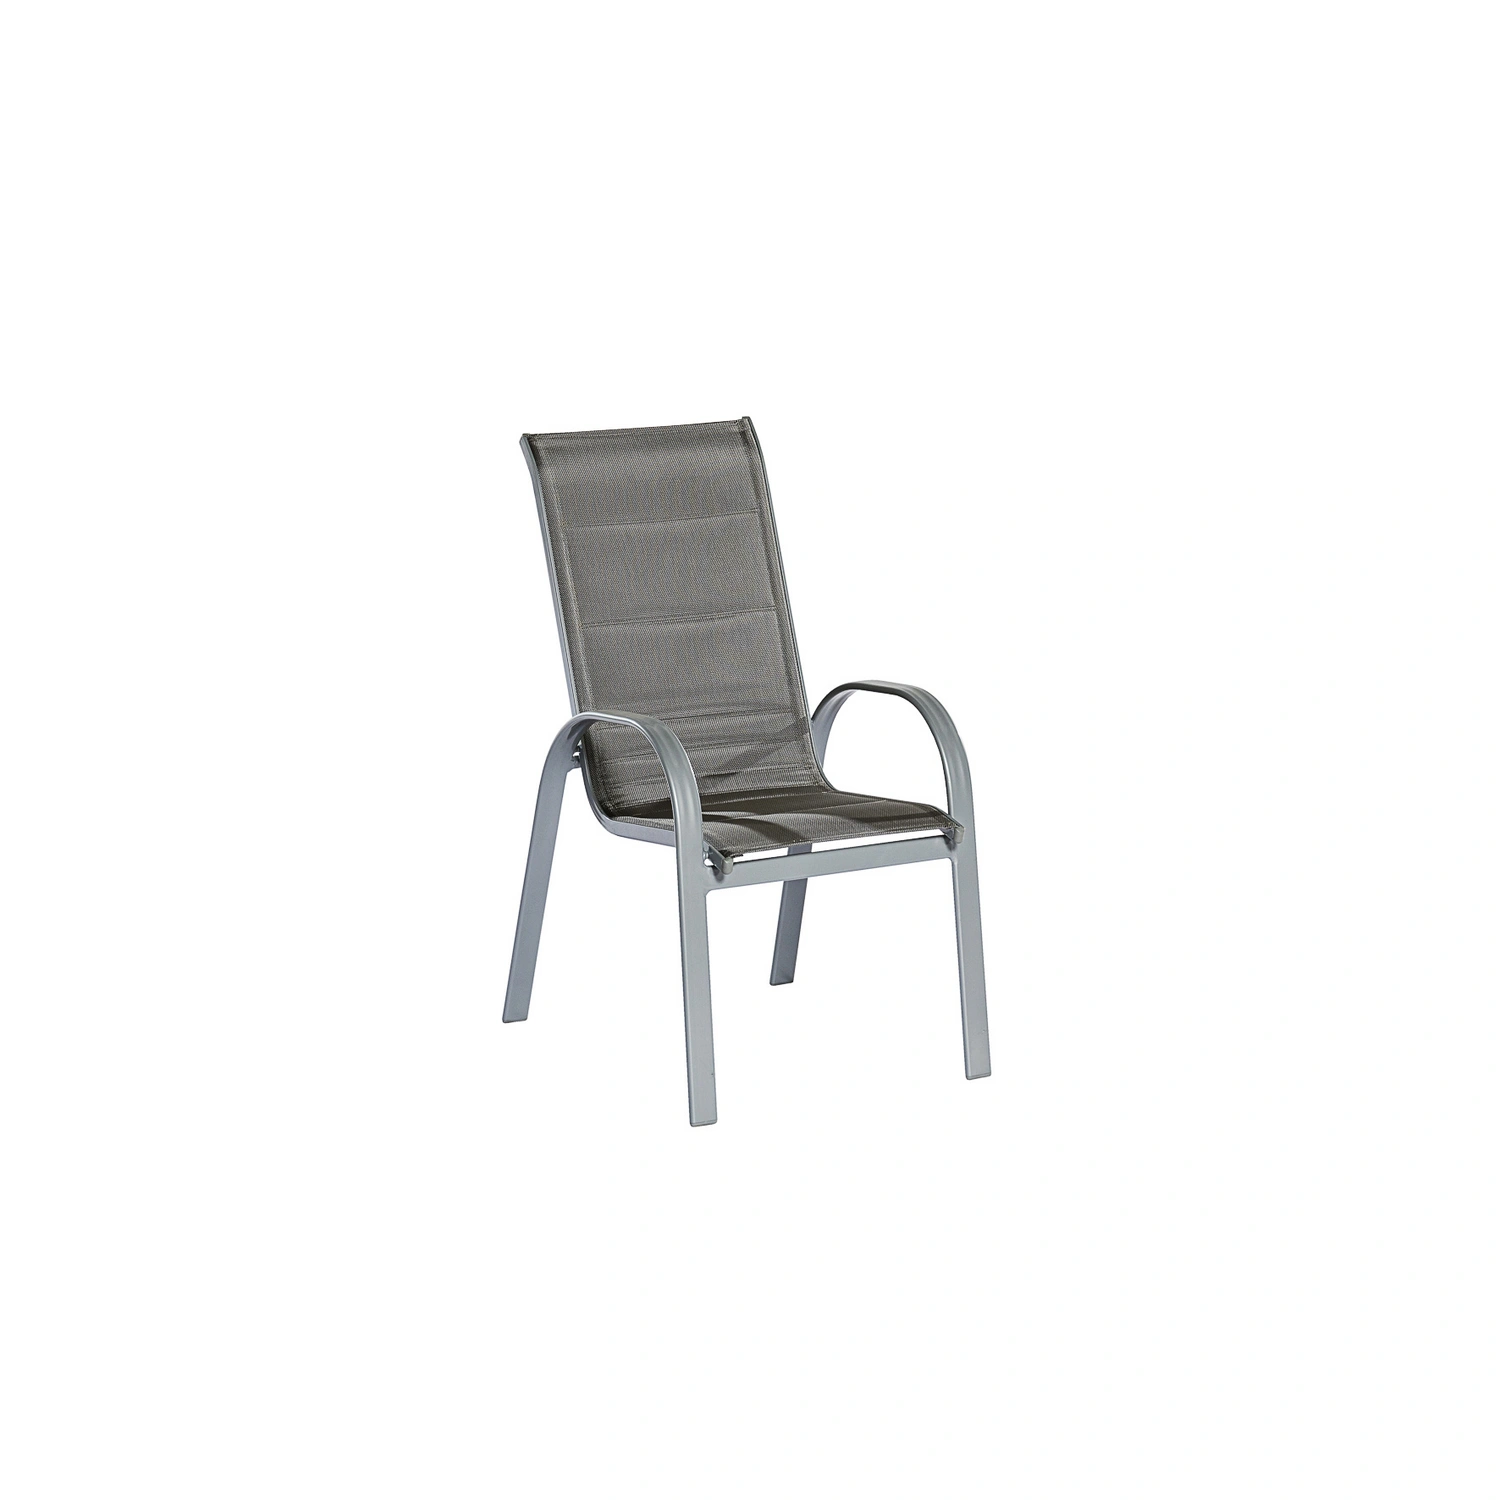 Gartenmöbelset Aluminium/Textil »Amalfi«, MERXX Sitzplätze, 2